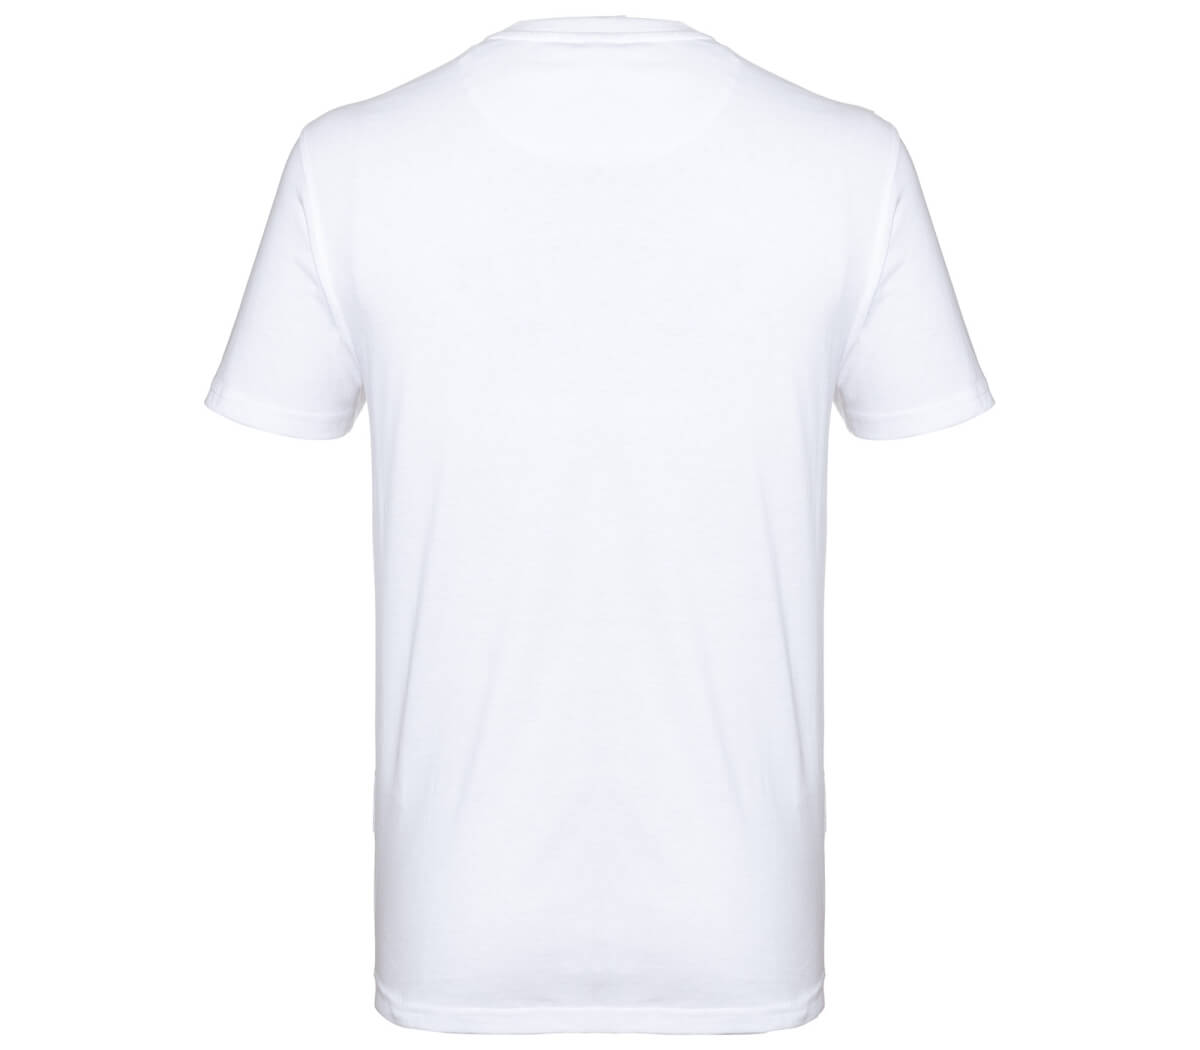 KÜBLER PULSE T-Shirt in Weiß, Größe L, Arbeitsshirt mit Rundhalsausschnitt, Atmungsaktiv